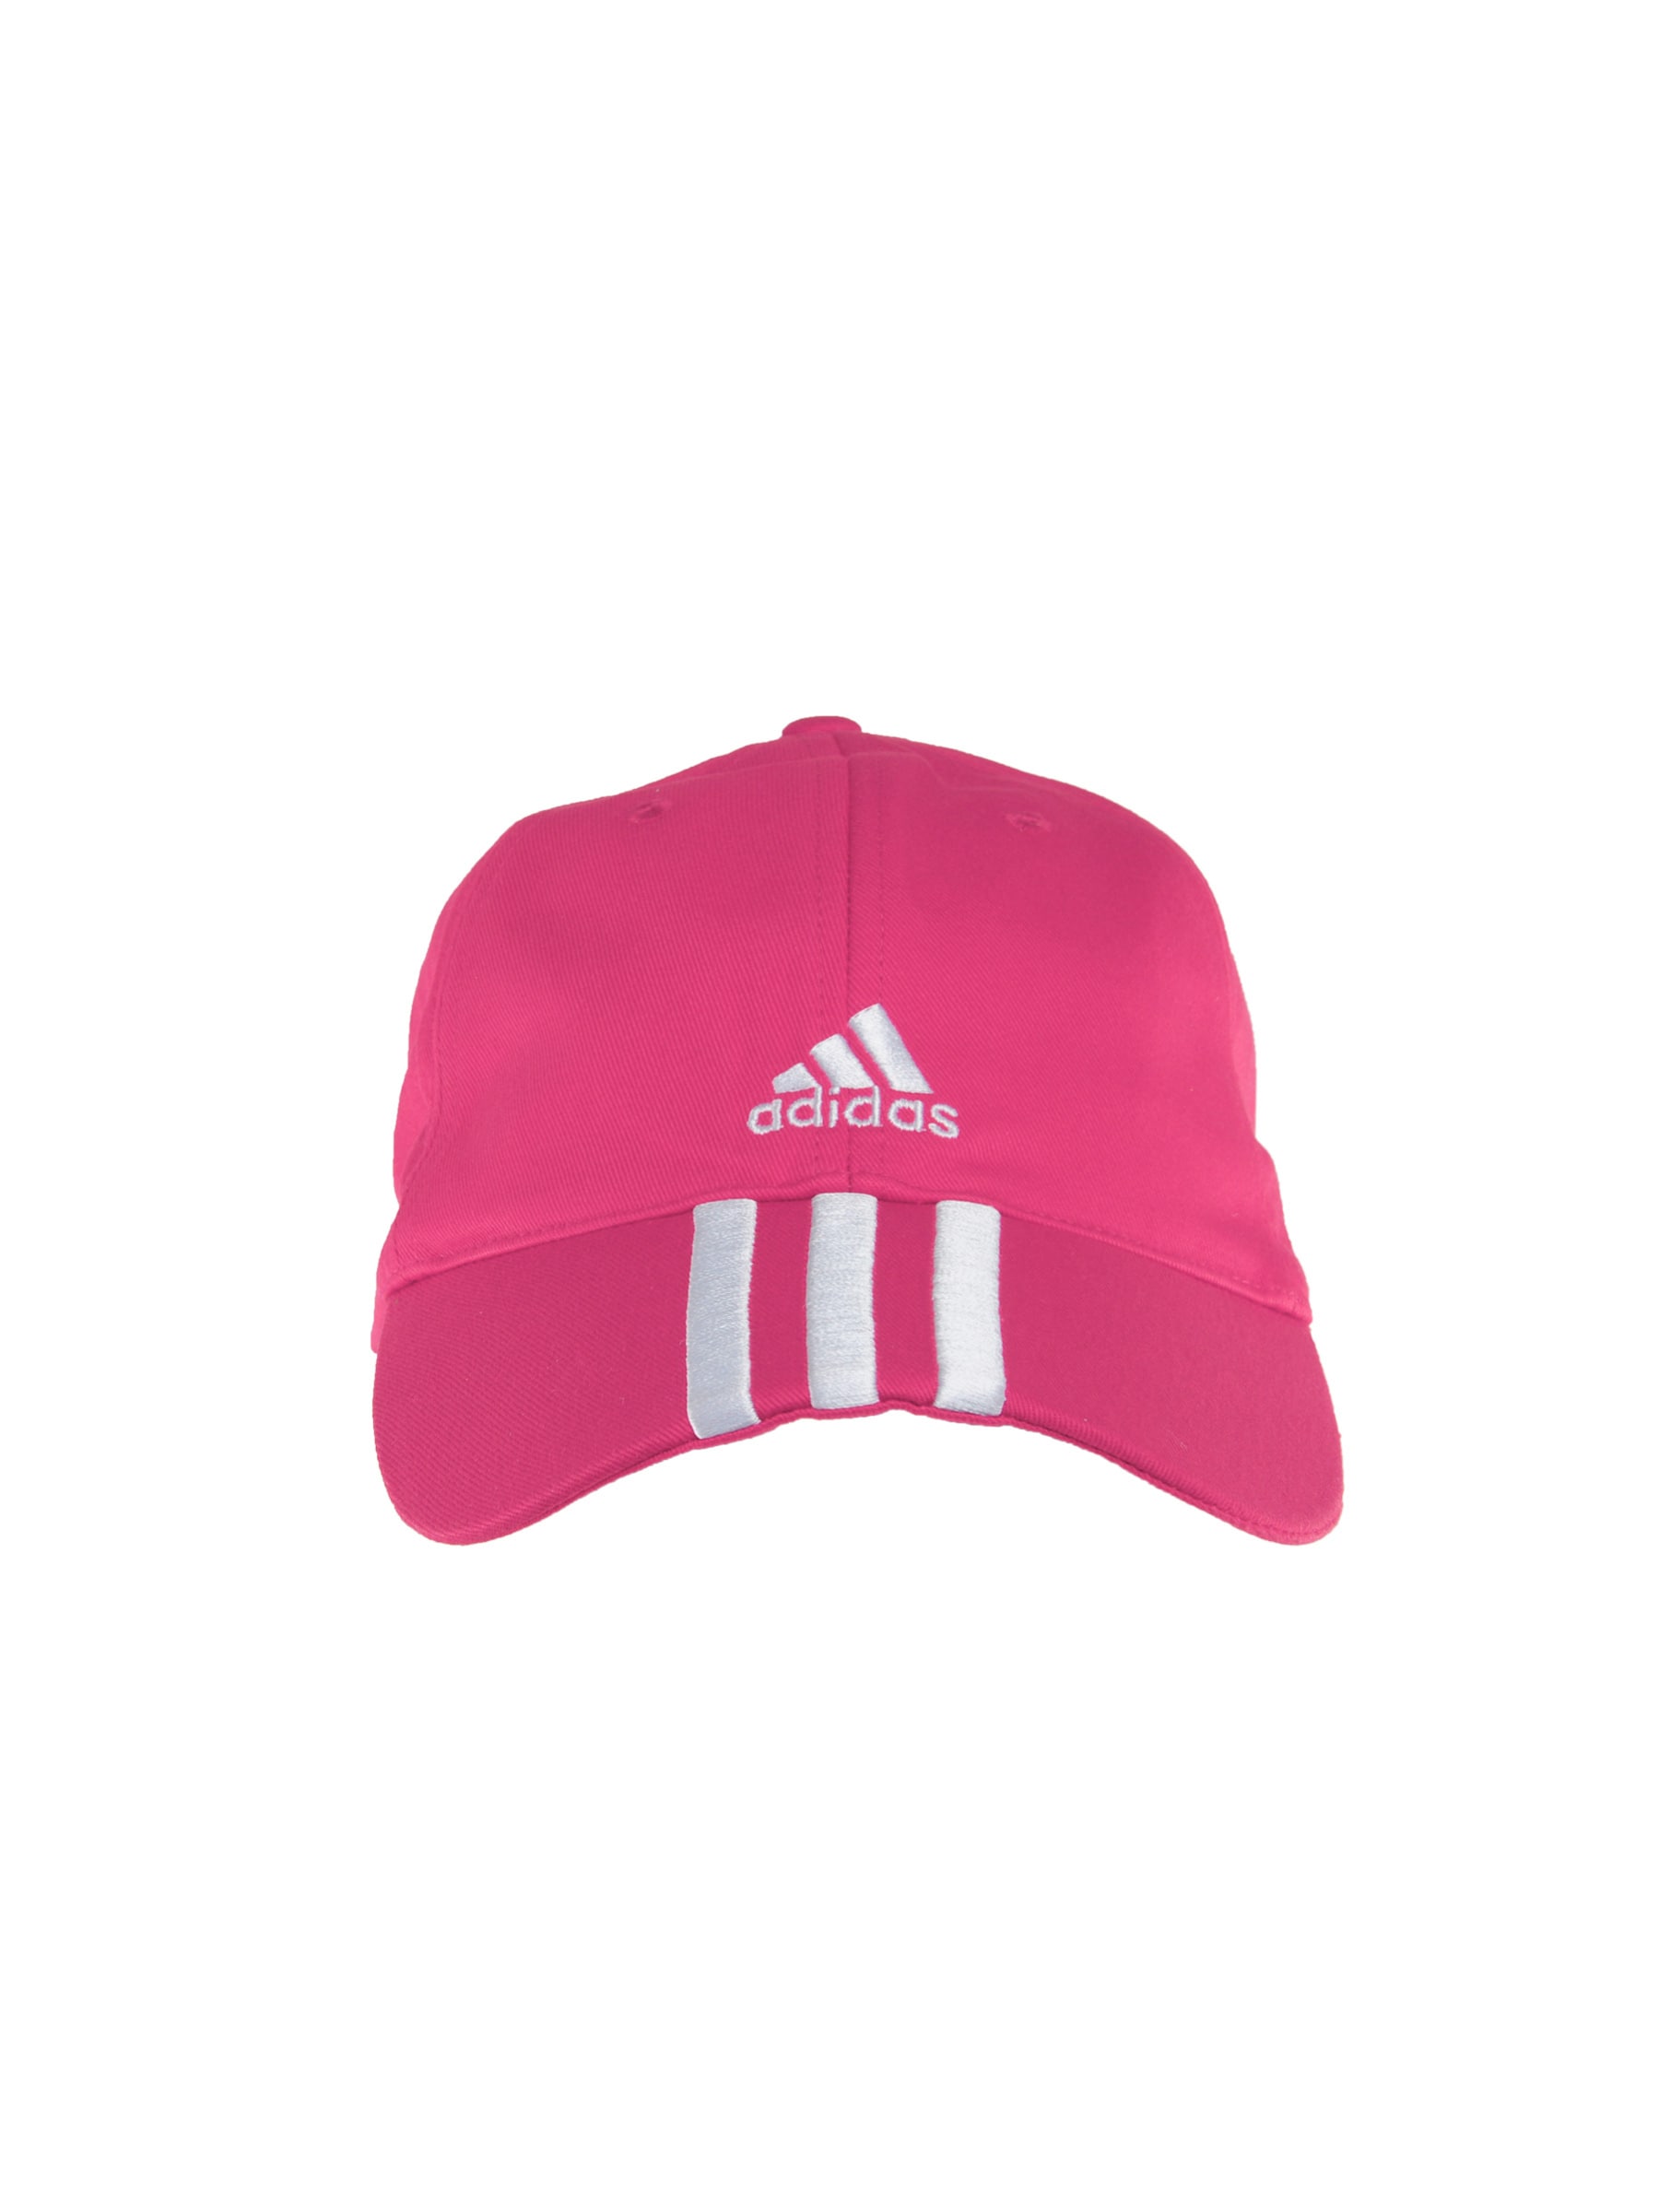 ADIDAS Unisex Pink Cap